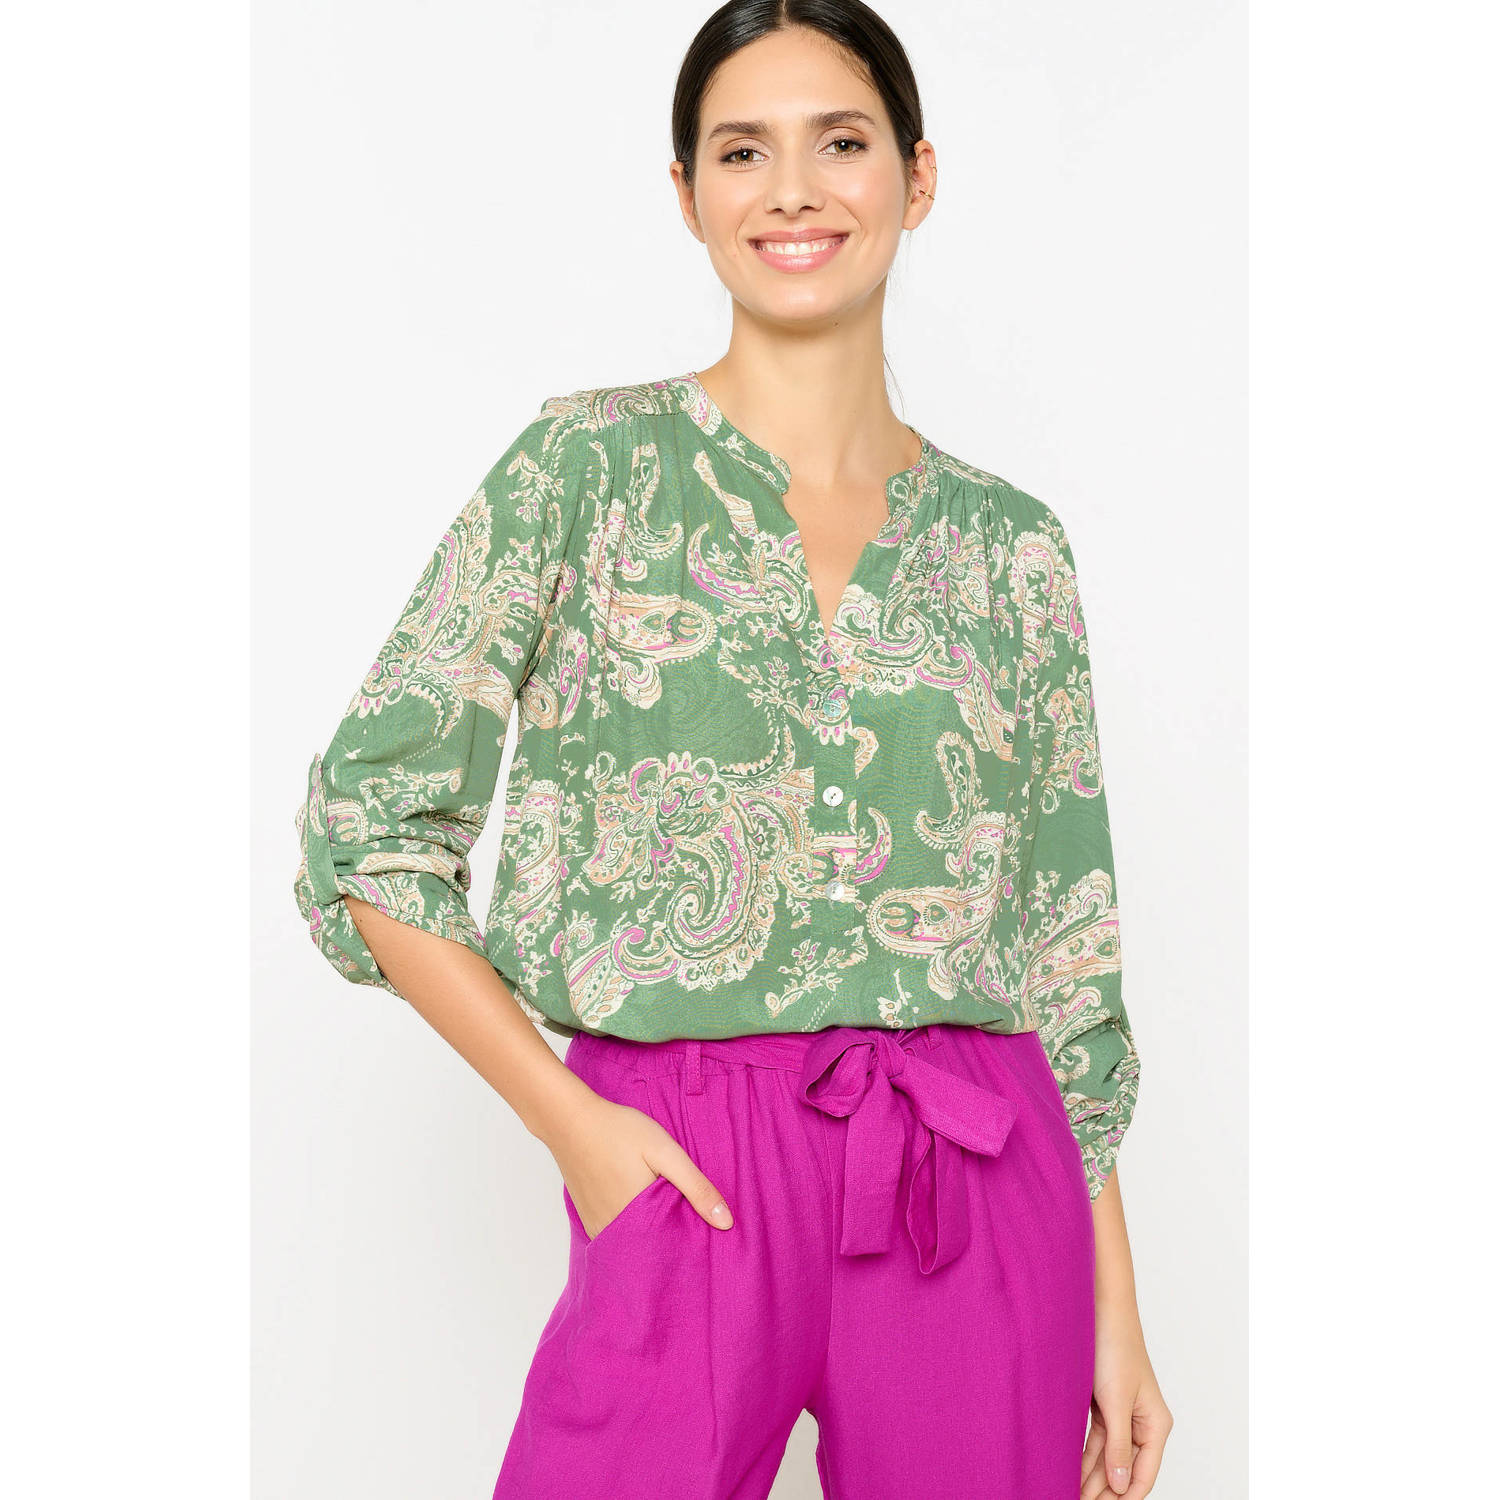 LOLALIZA blousetop met paisleyprint groen paars ecru